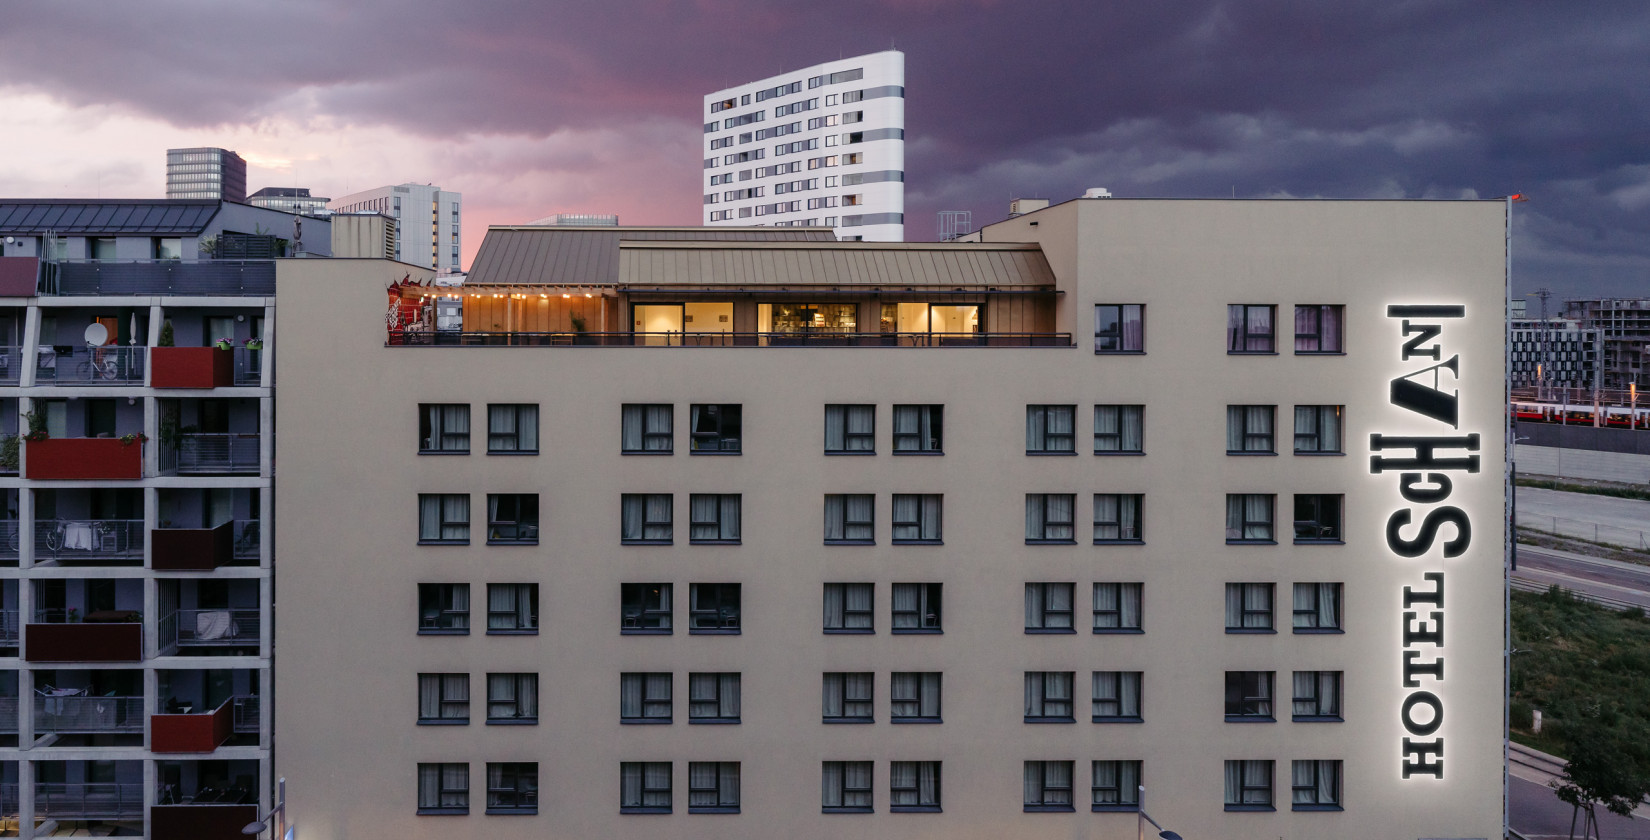 Hausfassade des Hotel Schani Wien mit Blick auf den Rooftop Event Space in der Dämmerung 